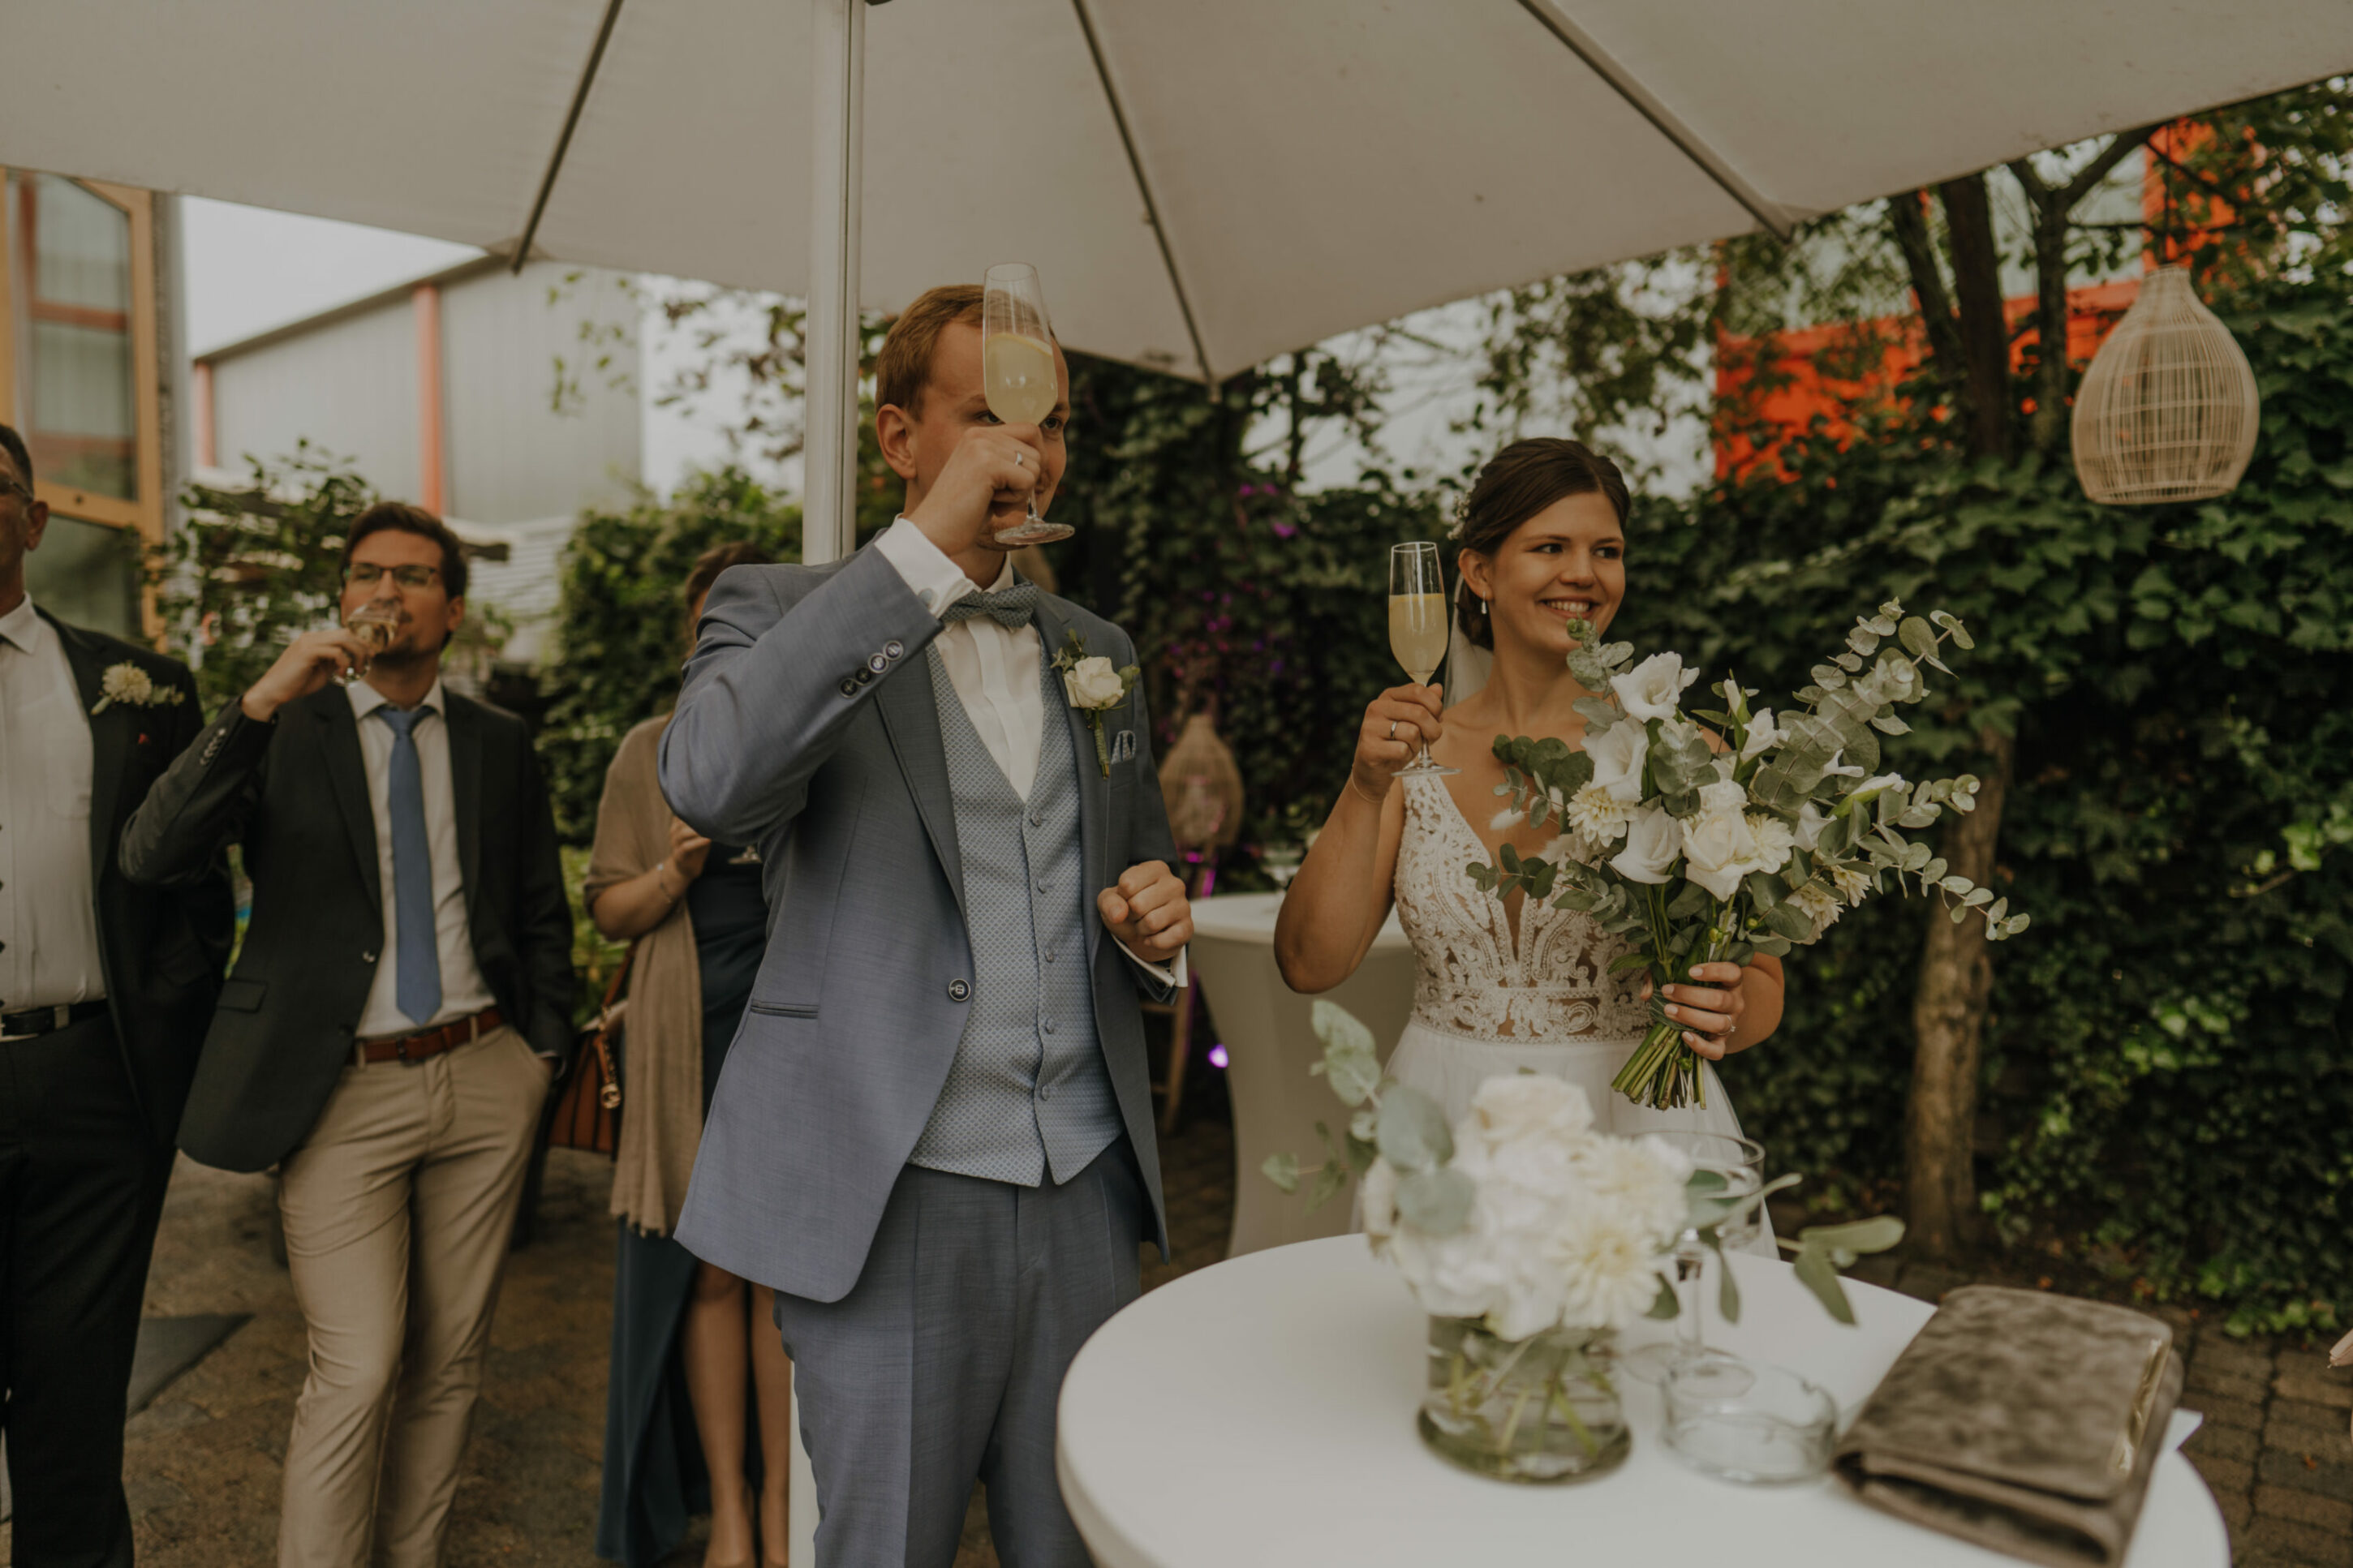 Hochzeitsgesellschaft stößt mit Sekt auf Brautpaar an, alle lachen und sind glücklich